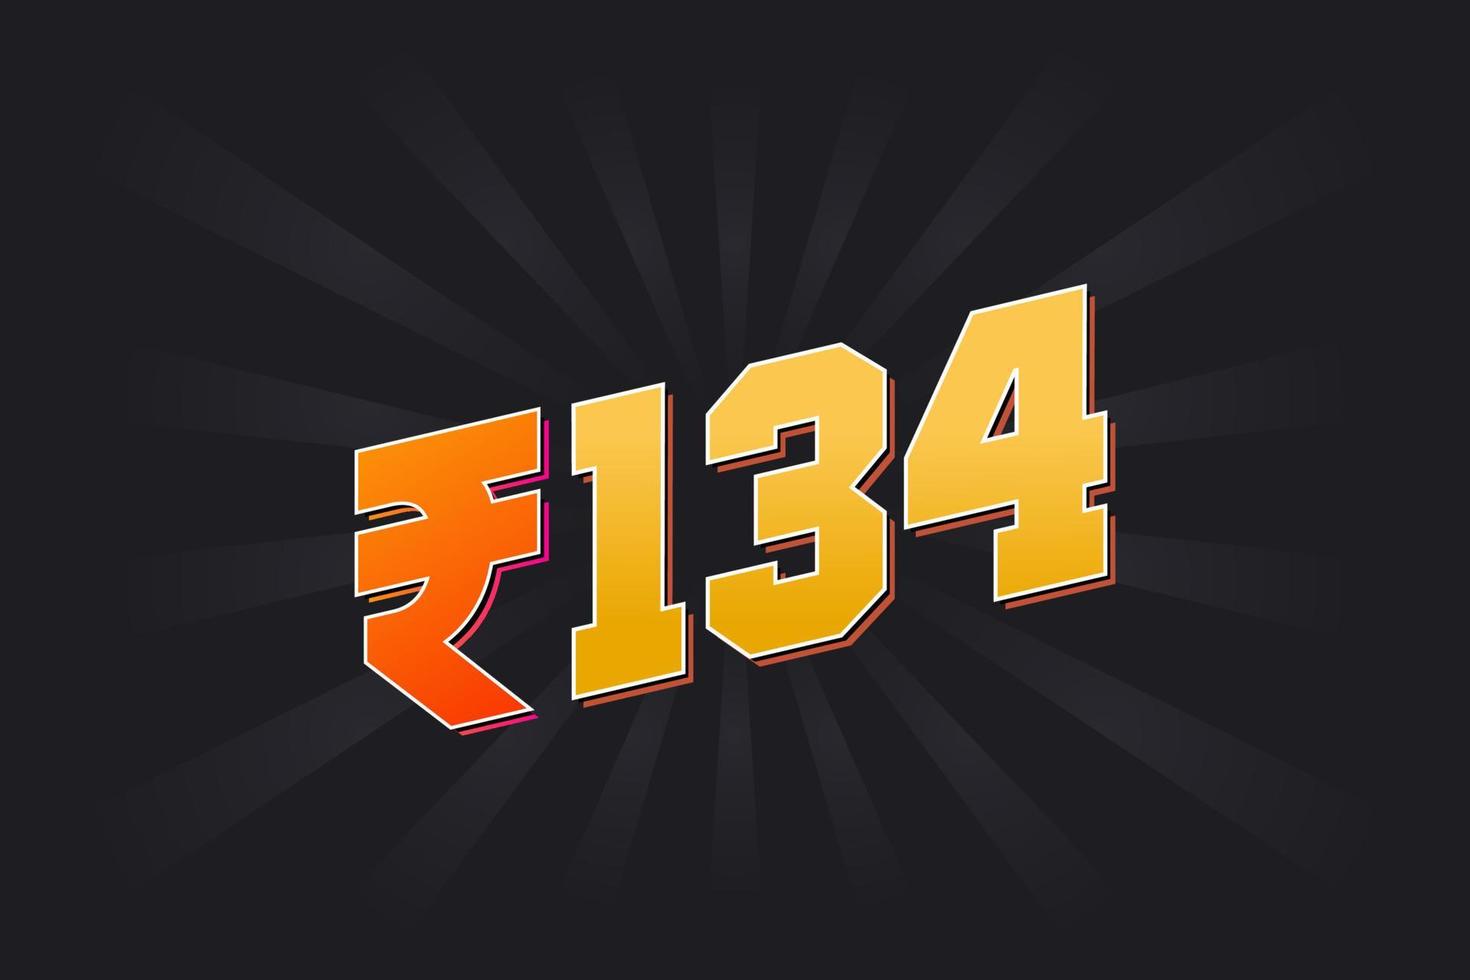 134 indisk rupee vektor valuta bild. 134 rupee symbol djärv text vektor illustration